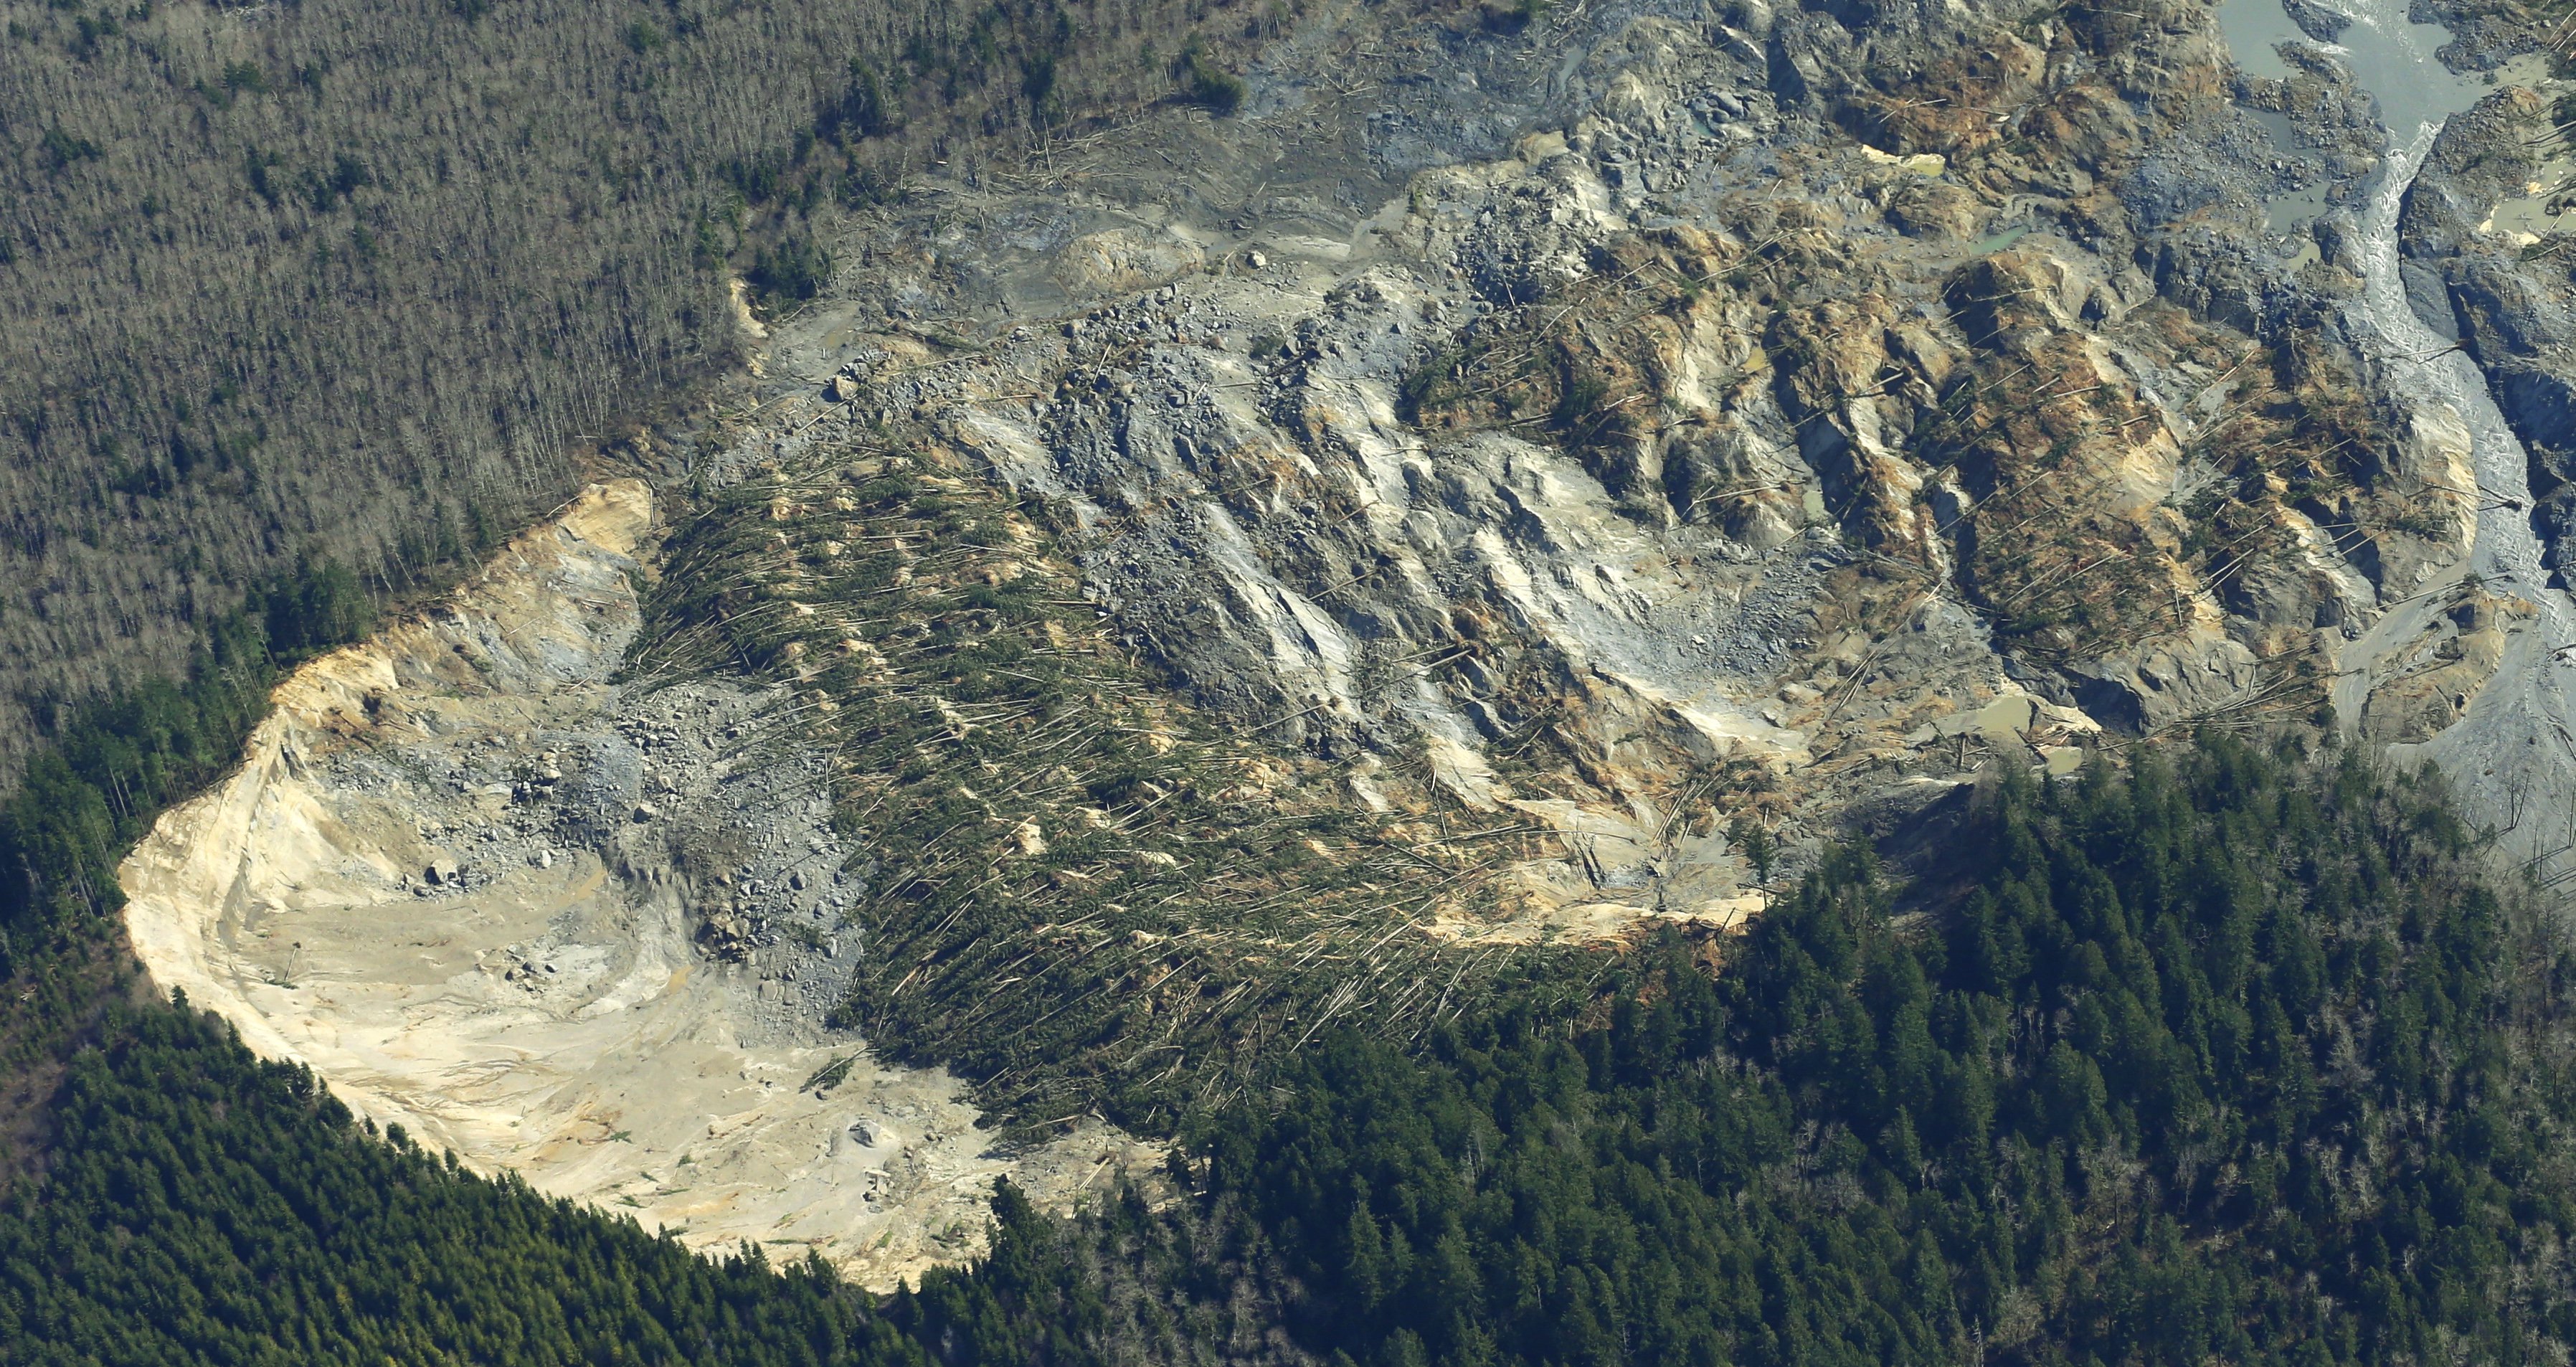 snohomish, Mudslide, Landslide, Nature, Natural, Disaster, Landscape, Forest, Washington Wallpaper